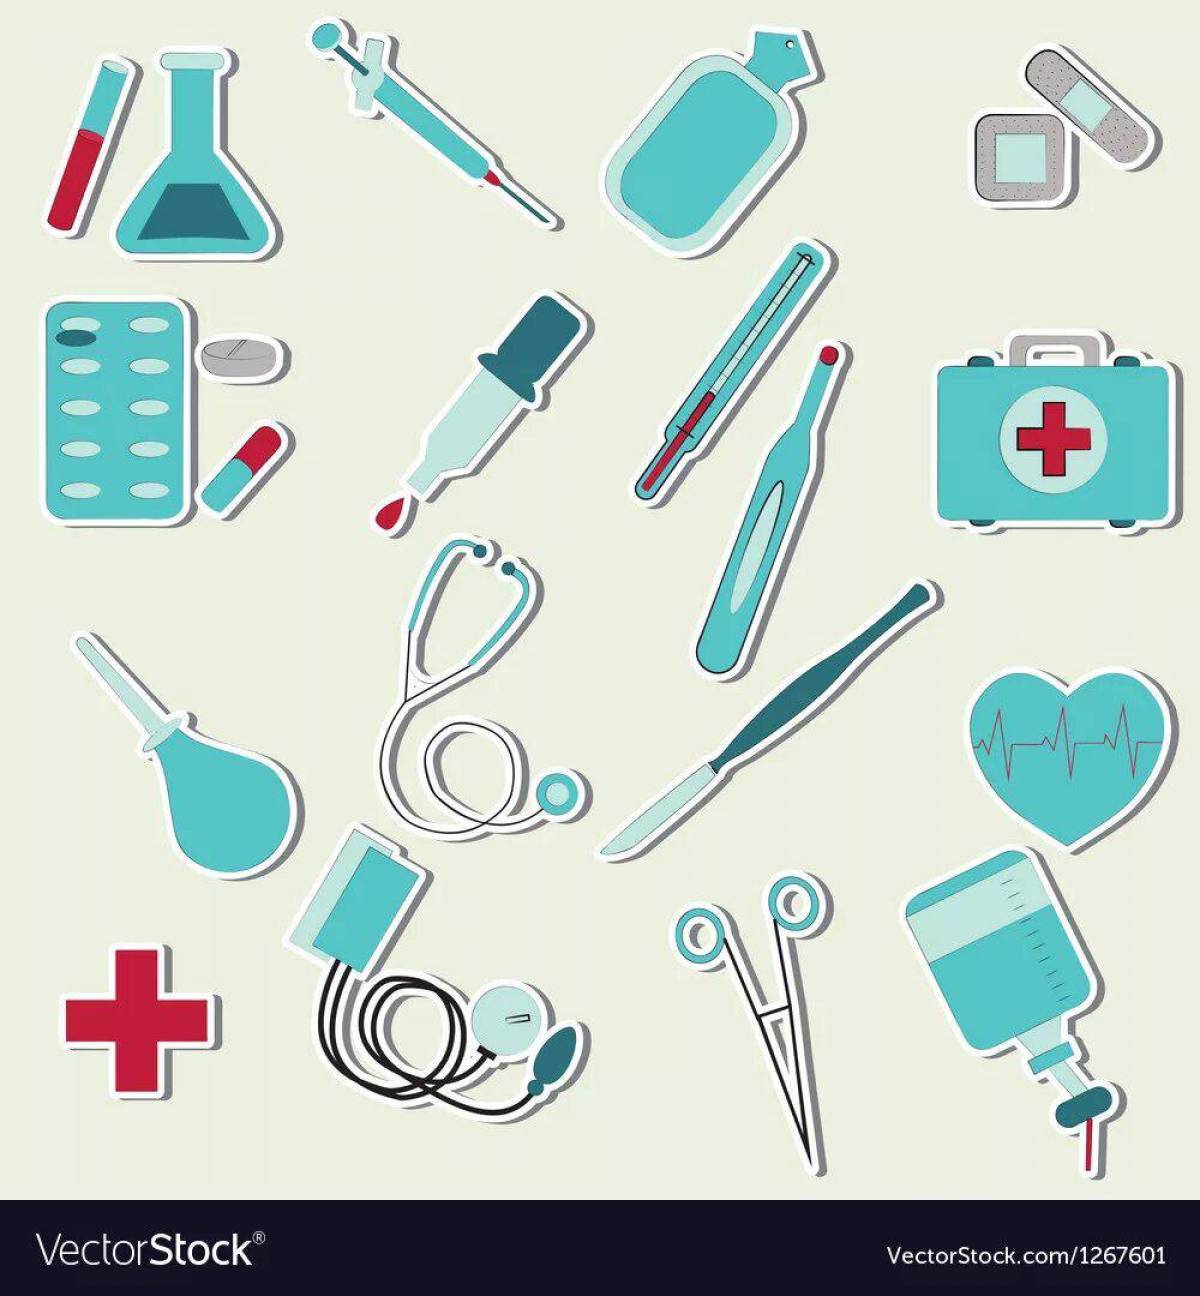 Медицинские инструменты для детей #7